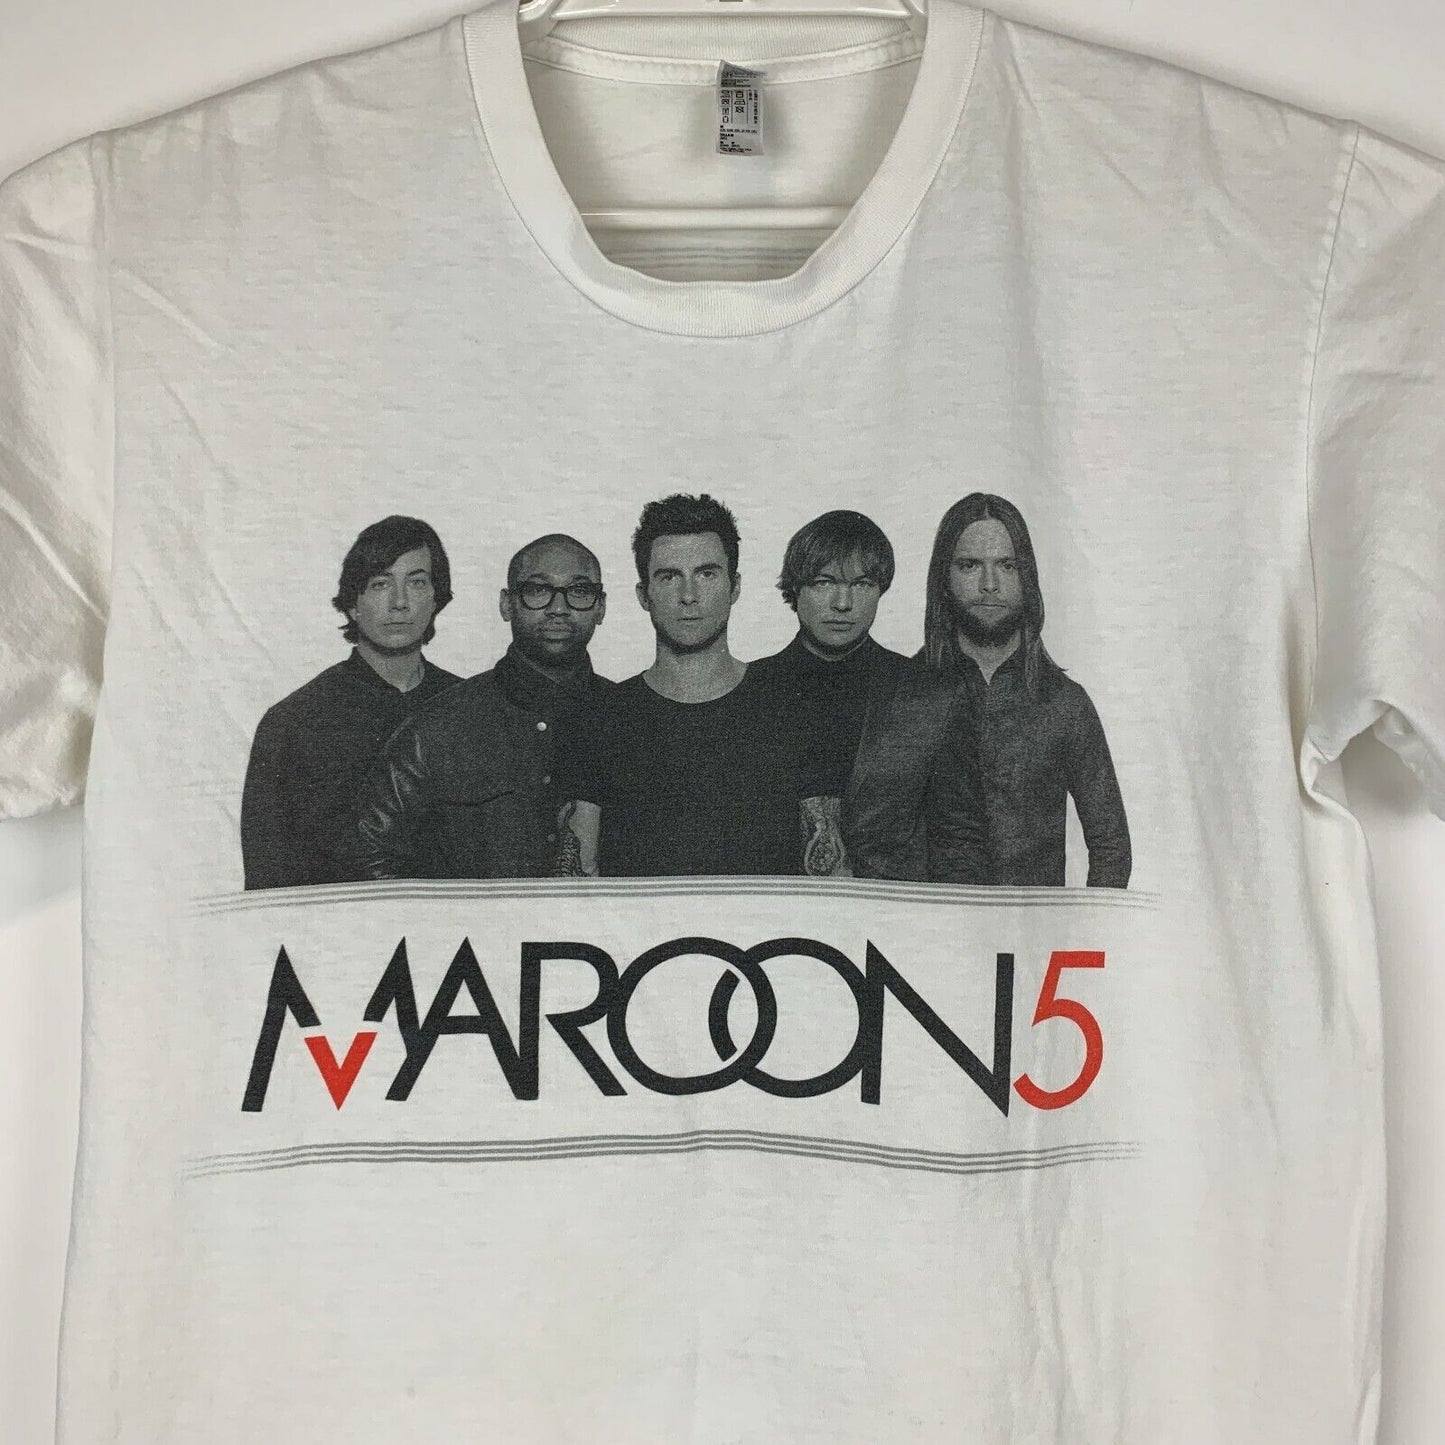 Maroon 5 Las Vegas 2013 Tour Camiseta Pop Rock Band Concierto Hecho en EE.UU. Medio